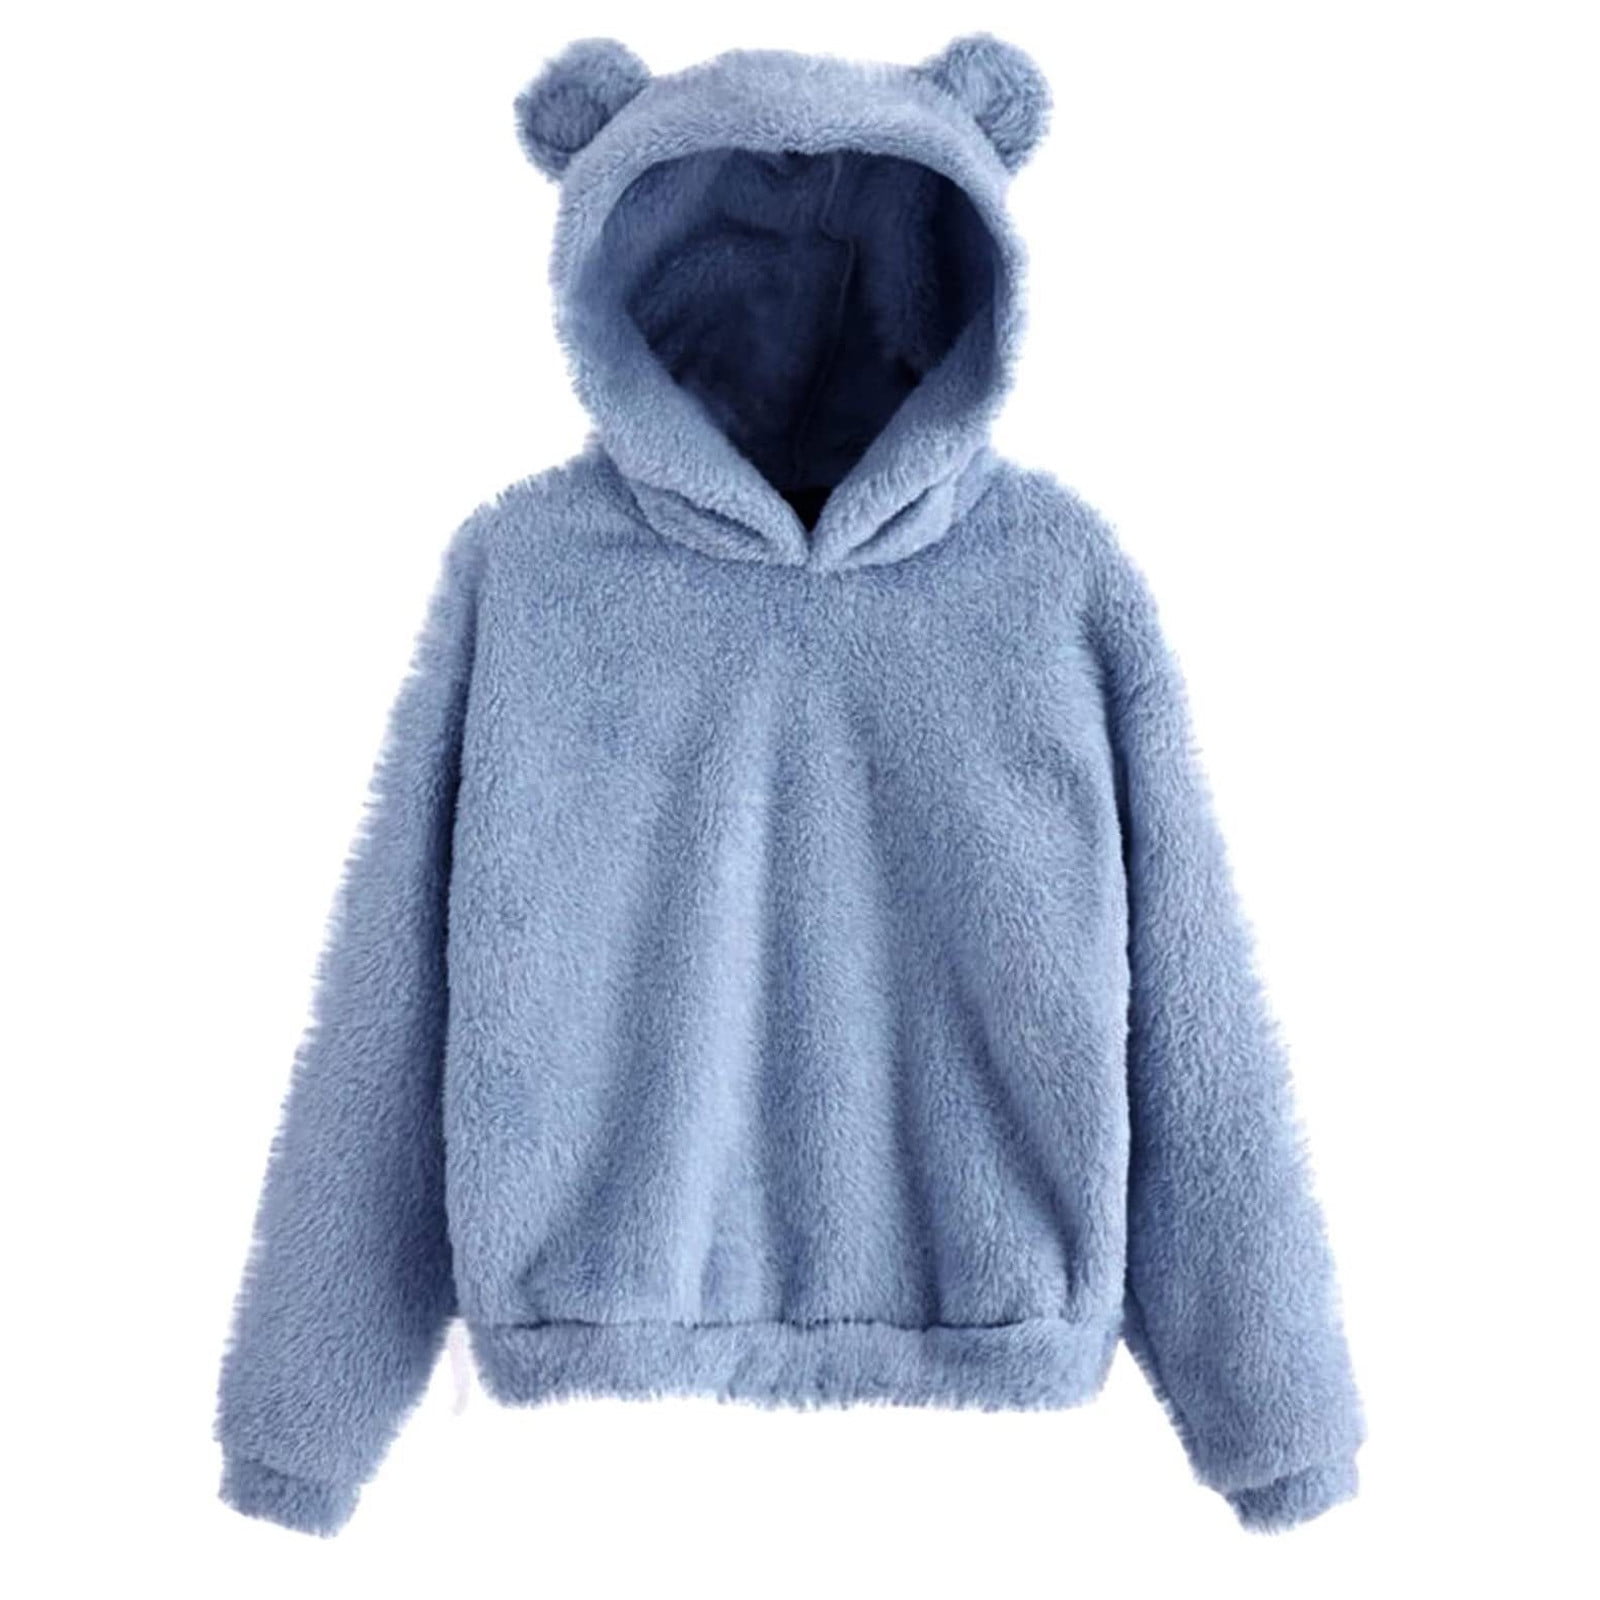 XFLWAM Bear Hoodie Women Fuzzy Pullover Sweater Sherpa Fleece Hooded  Sweatshirt Furry Cute Animal Hoodies with Ears Khaki S 